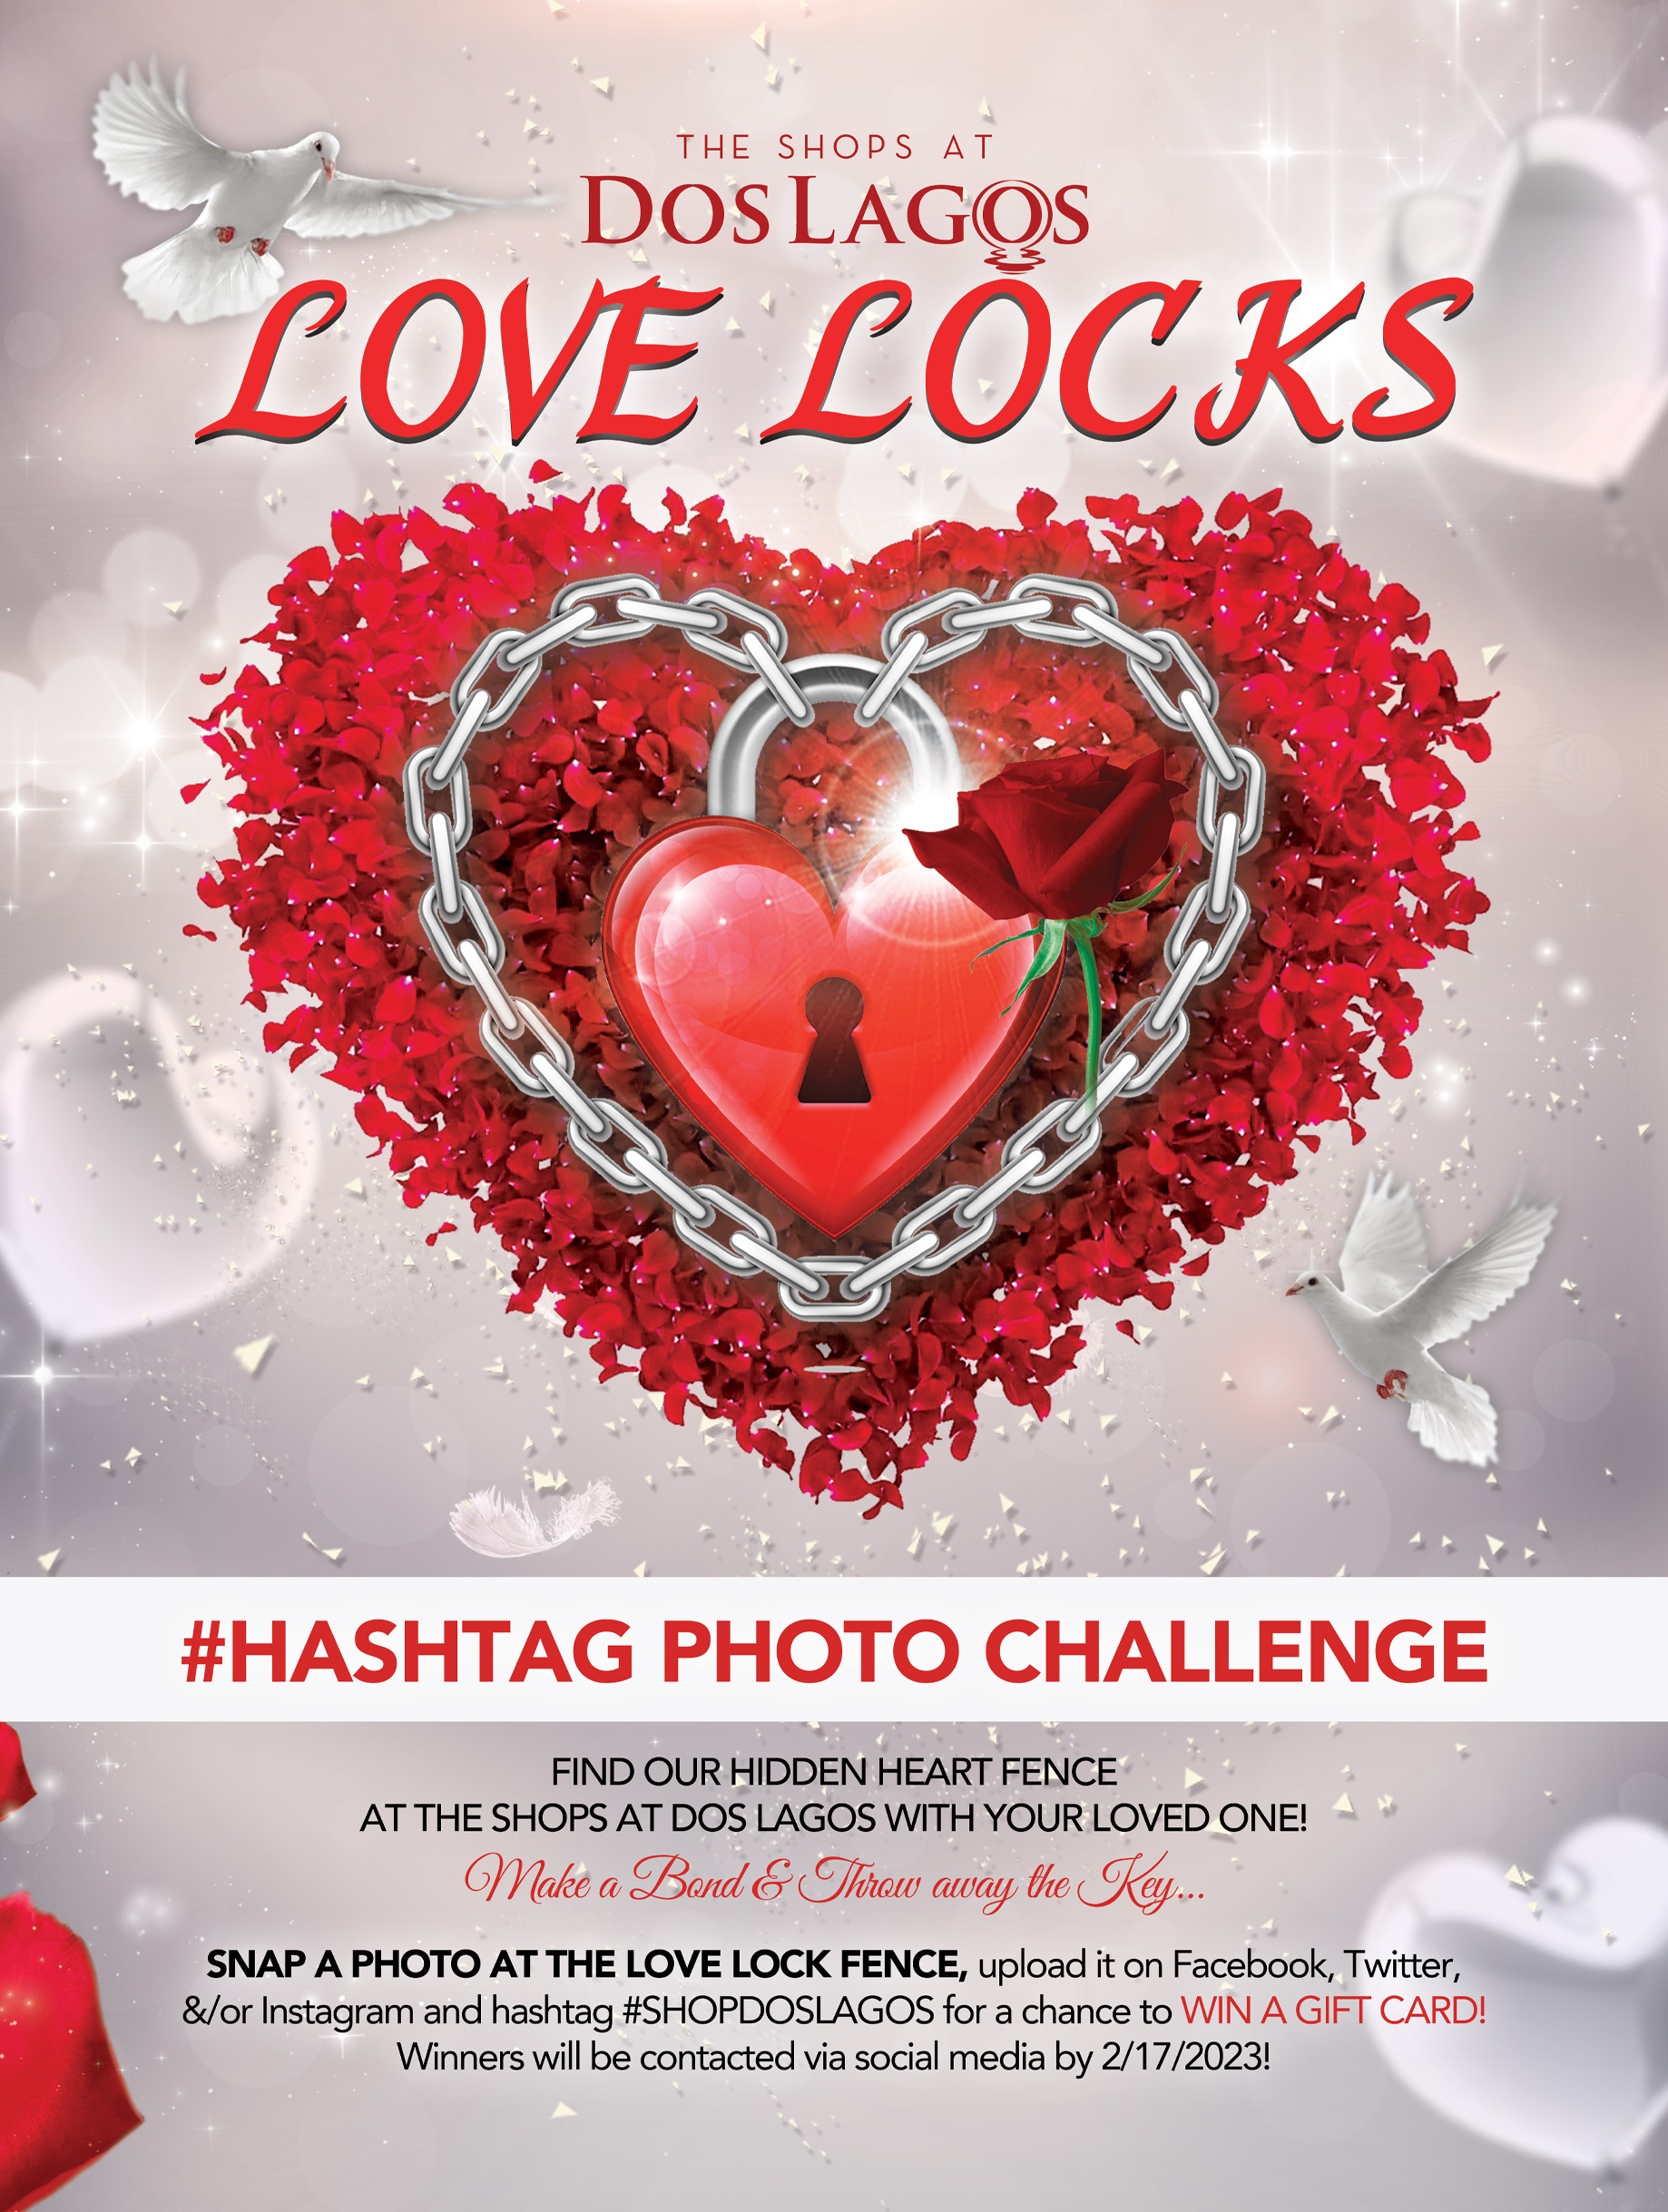 Love Locks – The Shops at Dos Lagos